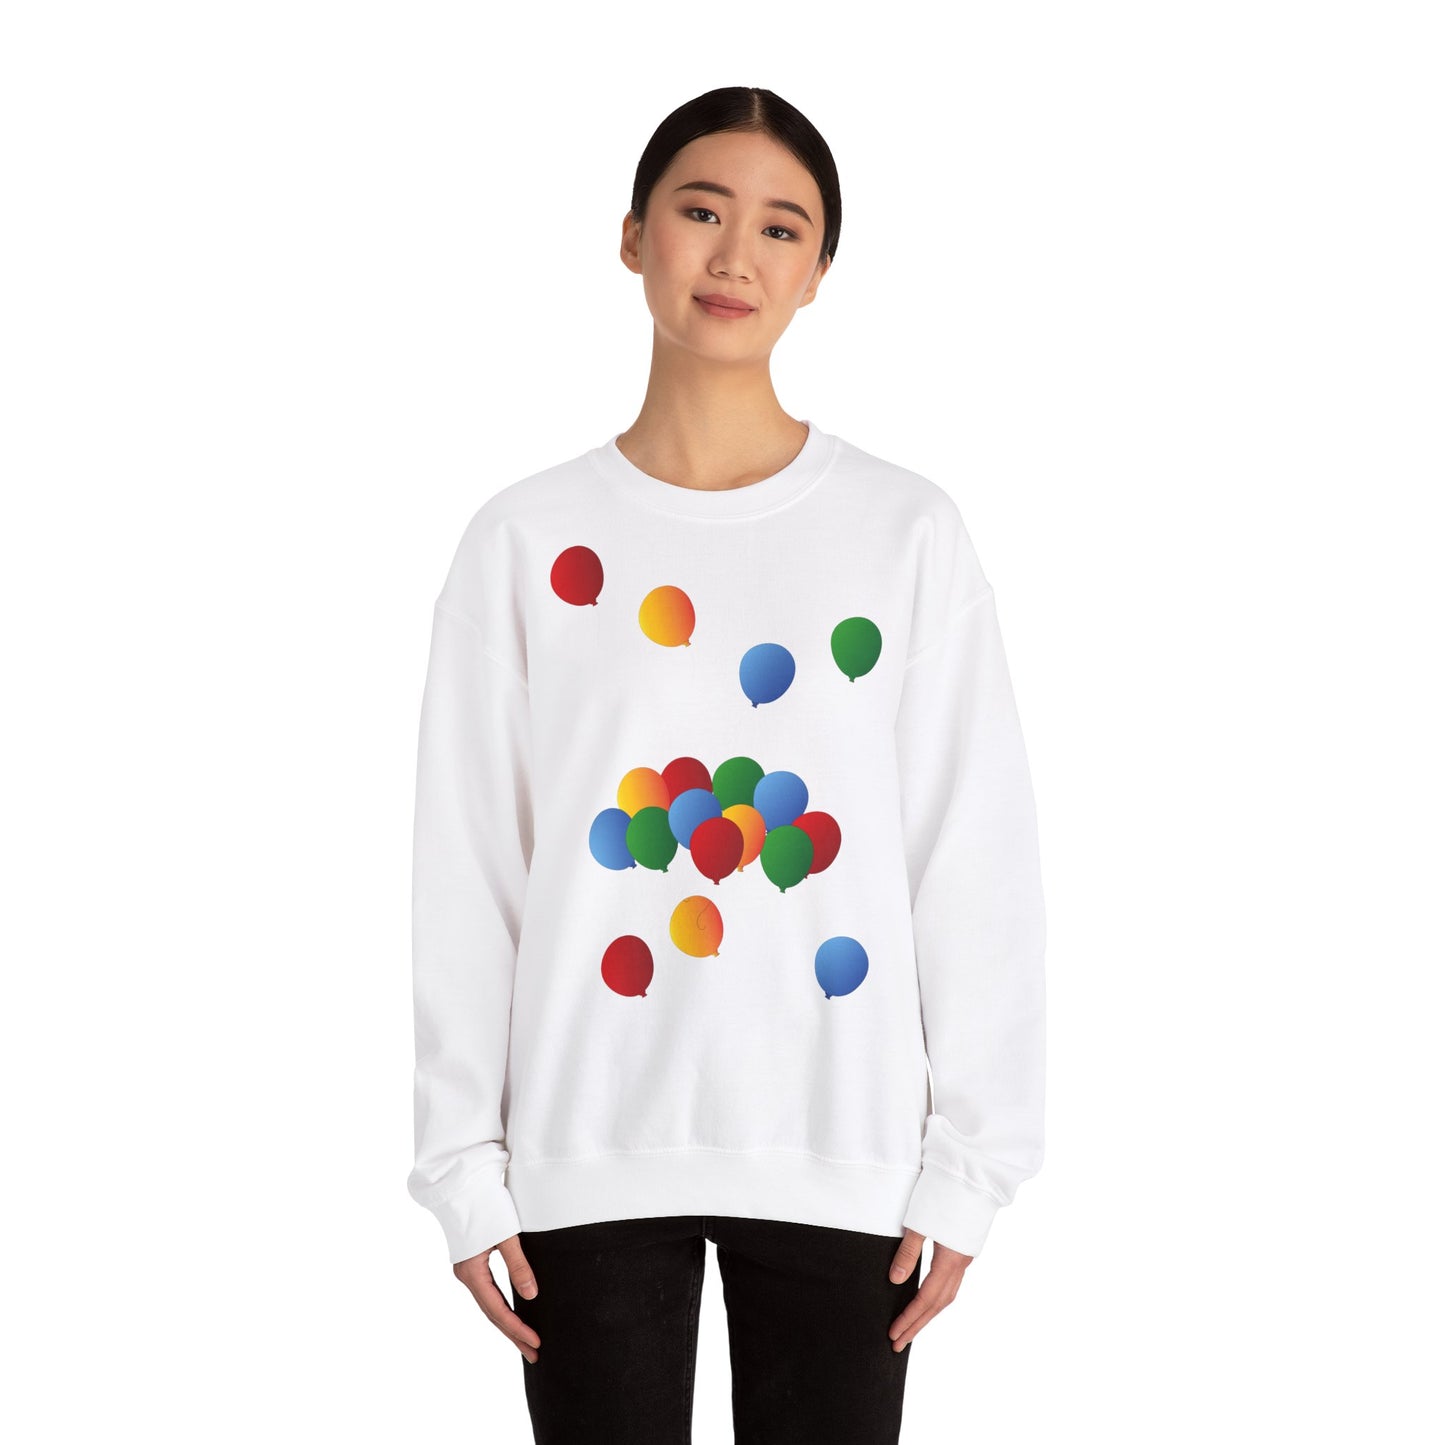 Sweatshirt adulte mixte Ballons de couleur